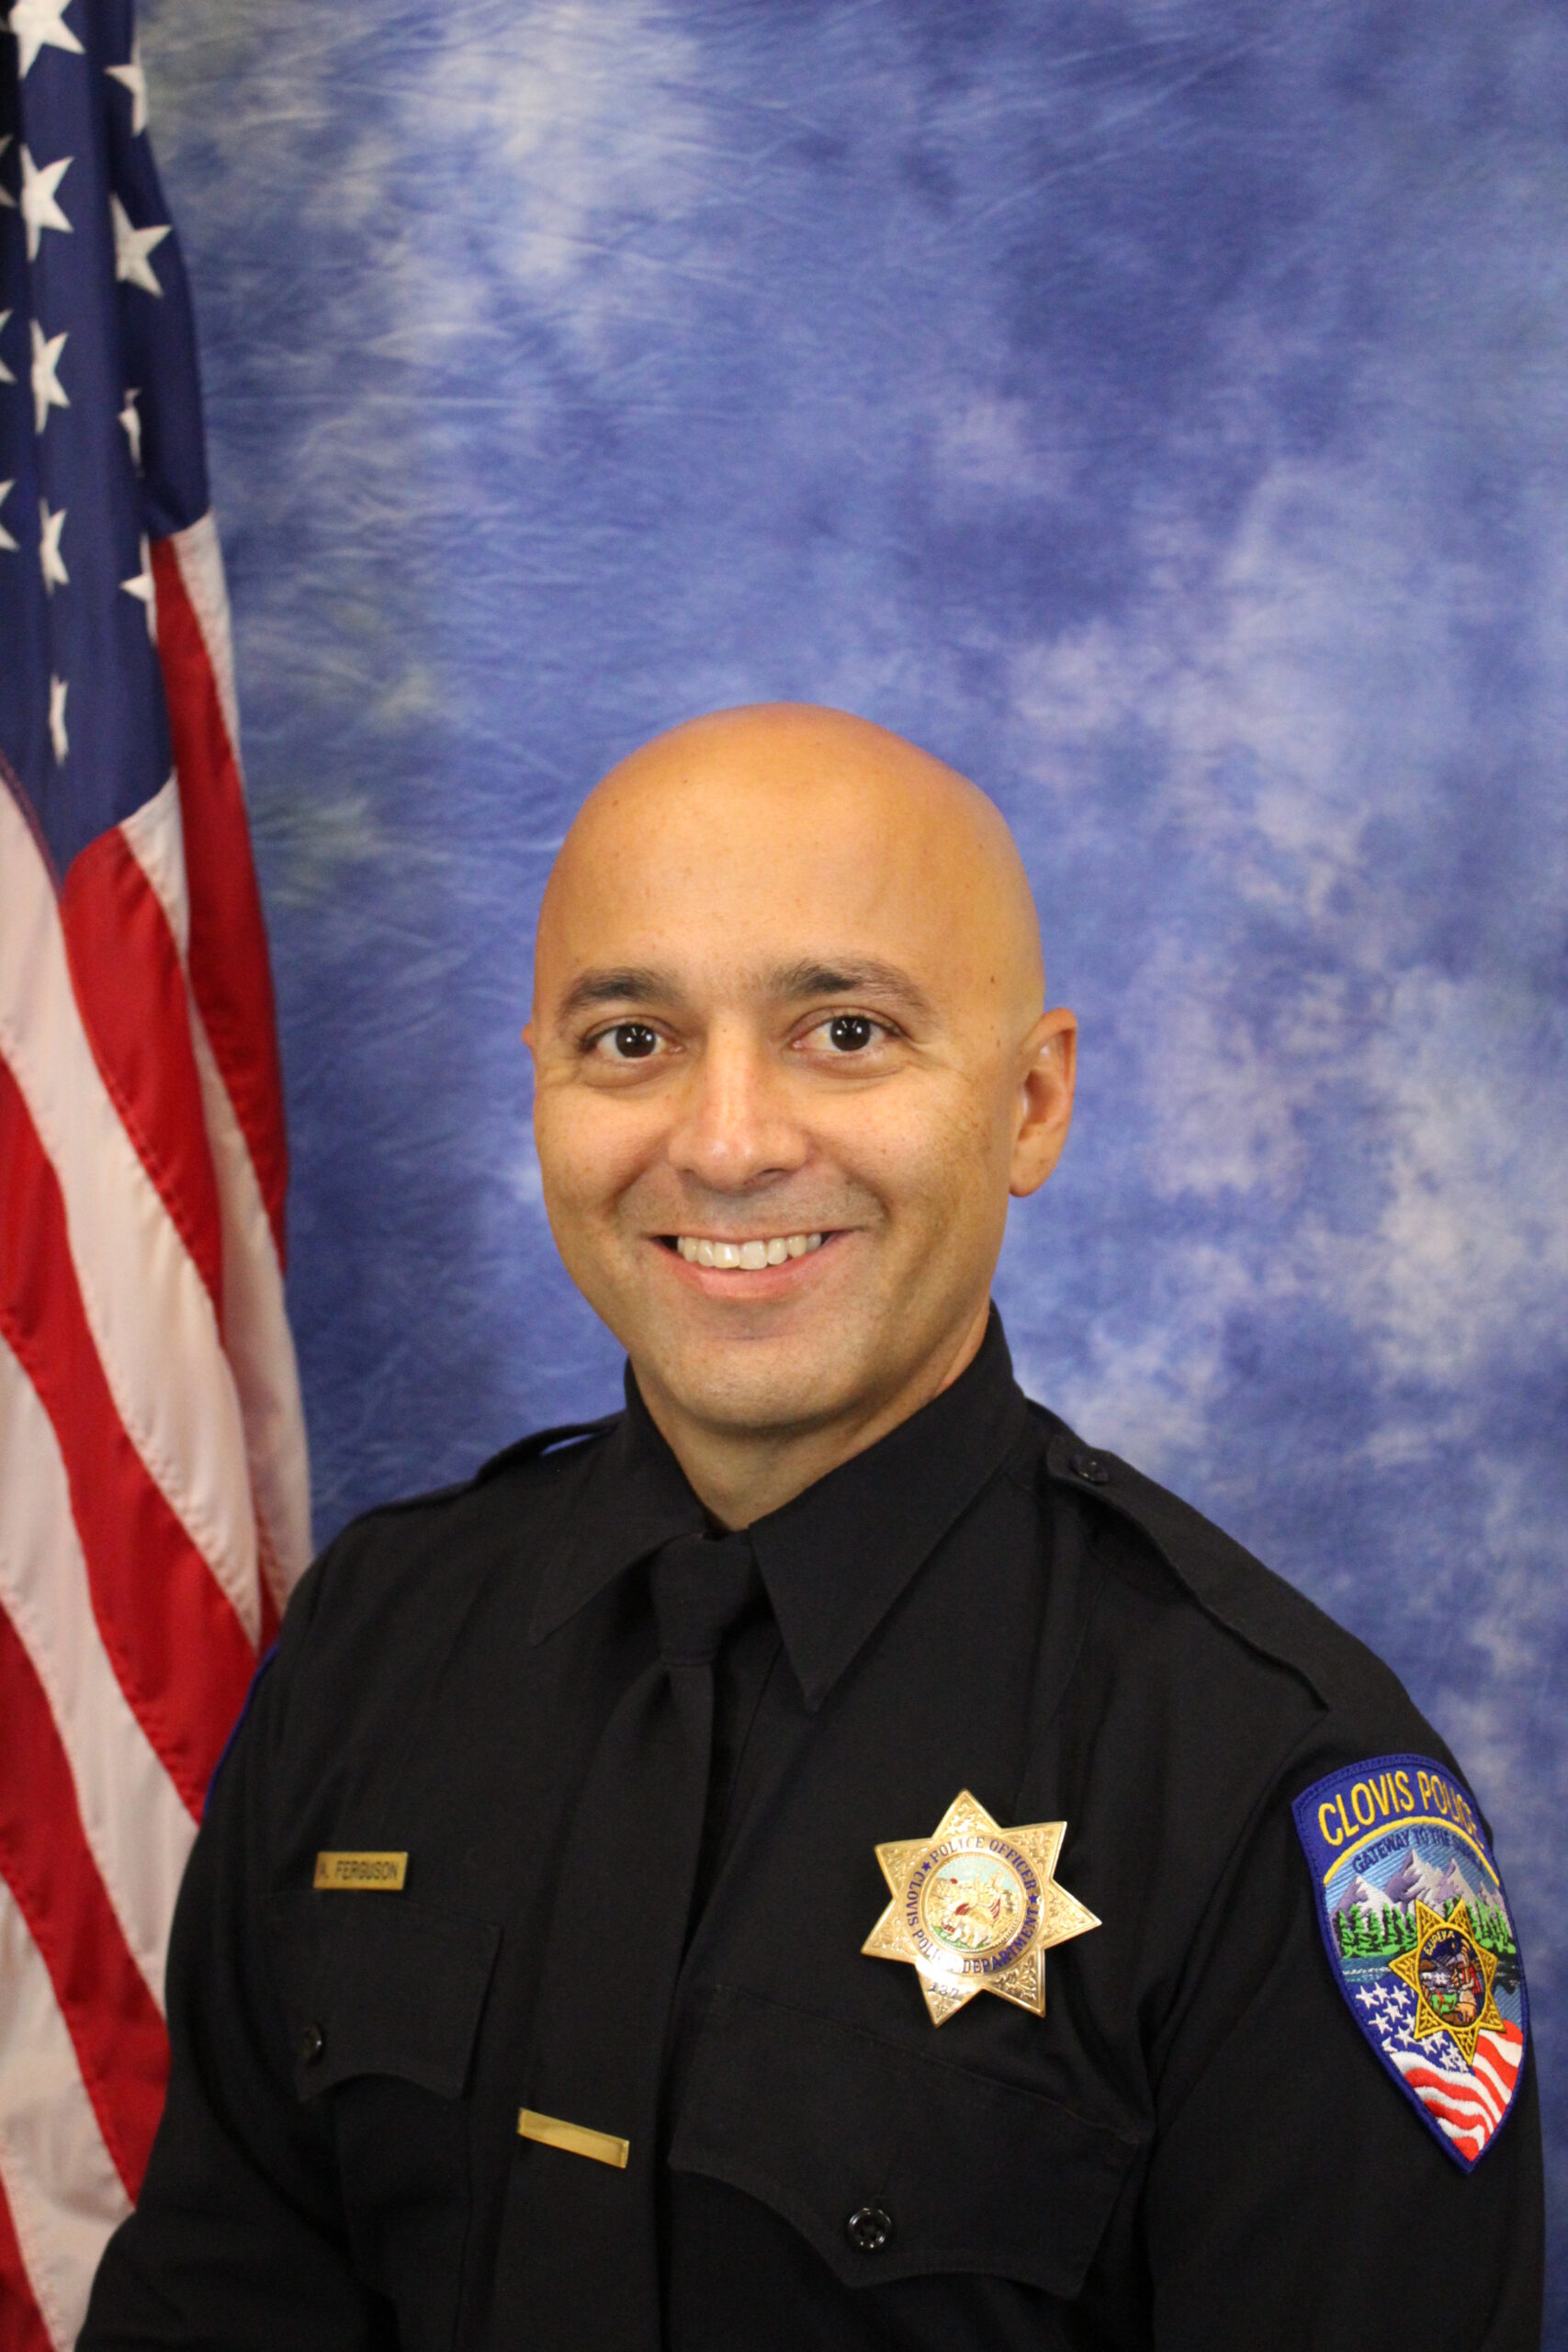 Portrait of Officer Ferguson